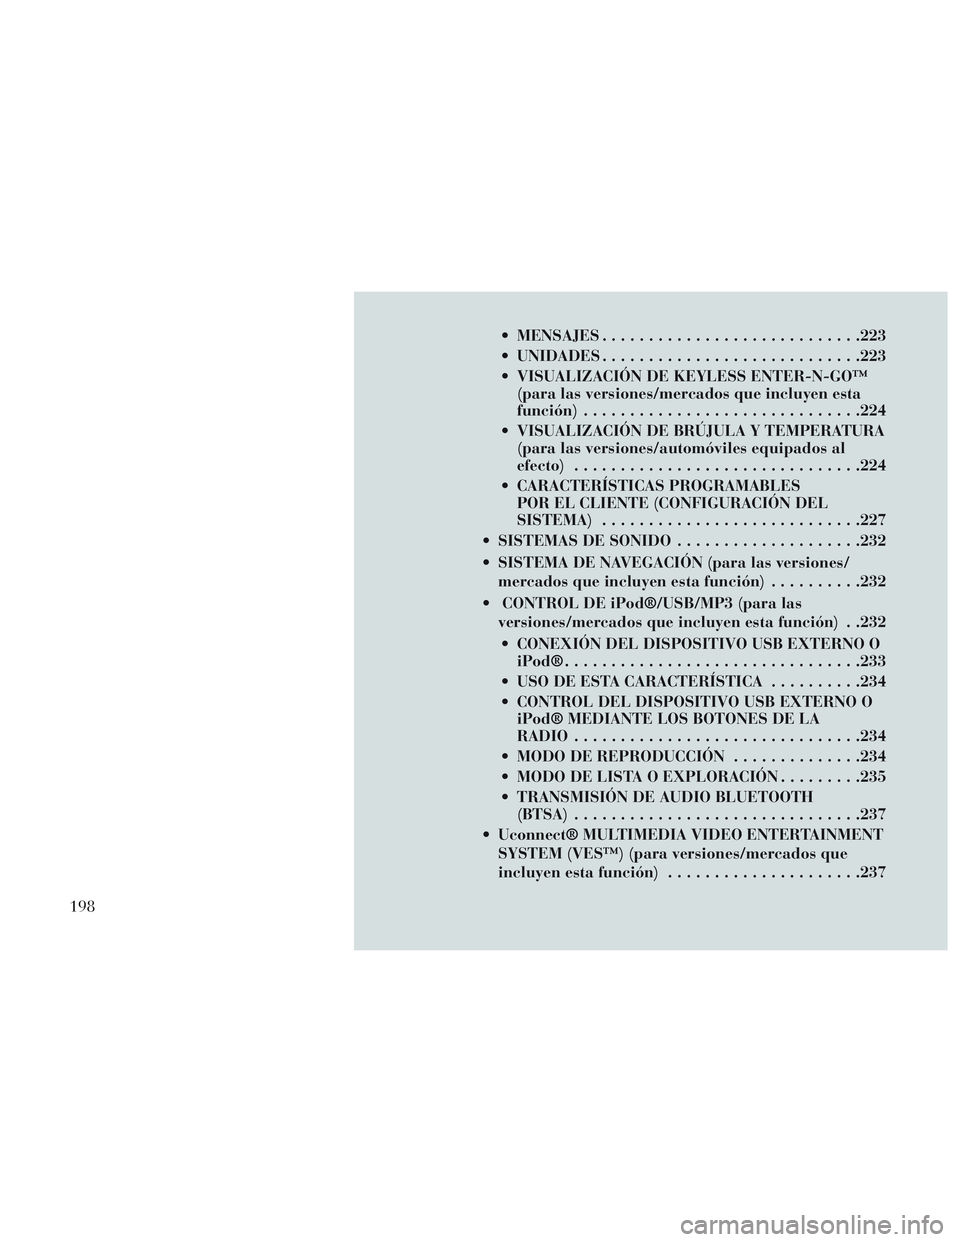 Lancia Voyager 2014  Manual de Empleo y Cuidado (in Spanish)  MENSAJES........................... .223
 UNIDADES ........................... .223
 VISUALIZACIÓN DE KEYLESS ENTER-N-GO™ (para las versiones/mercados que incluyen esta
función) .................